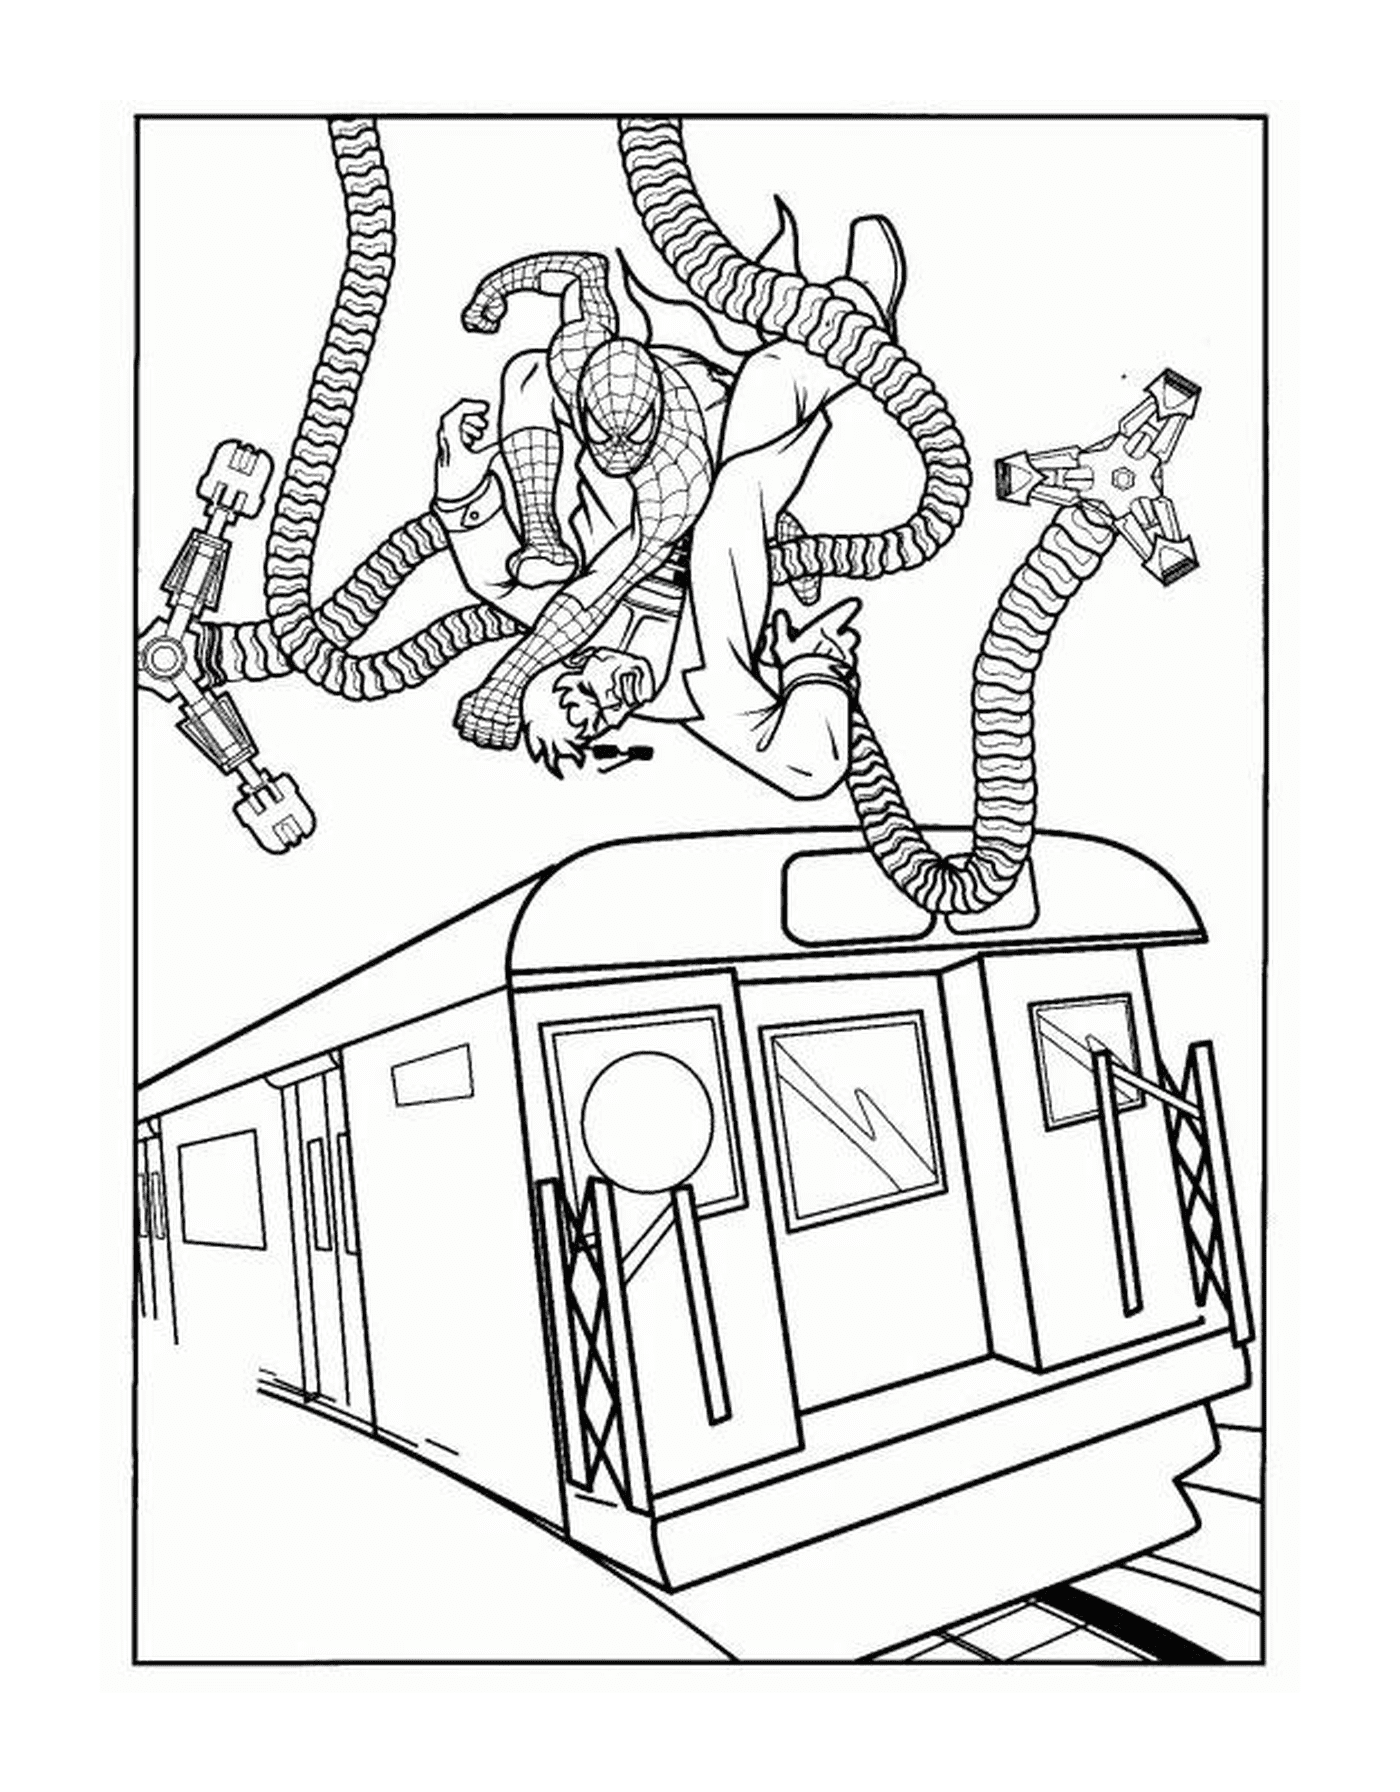 Bataille entre Docteur Octopus et Spider-man sur un train